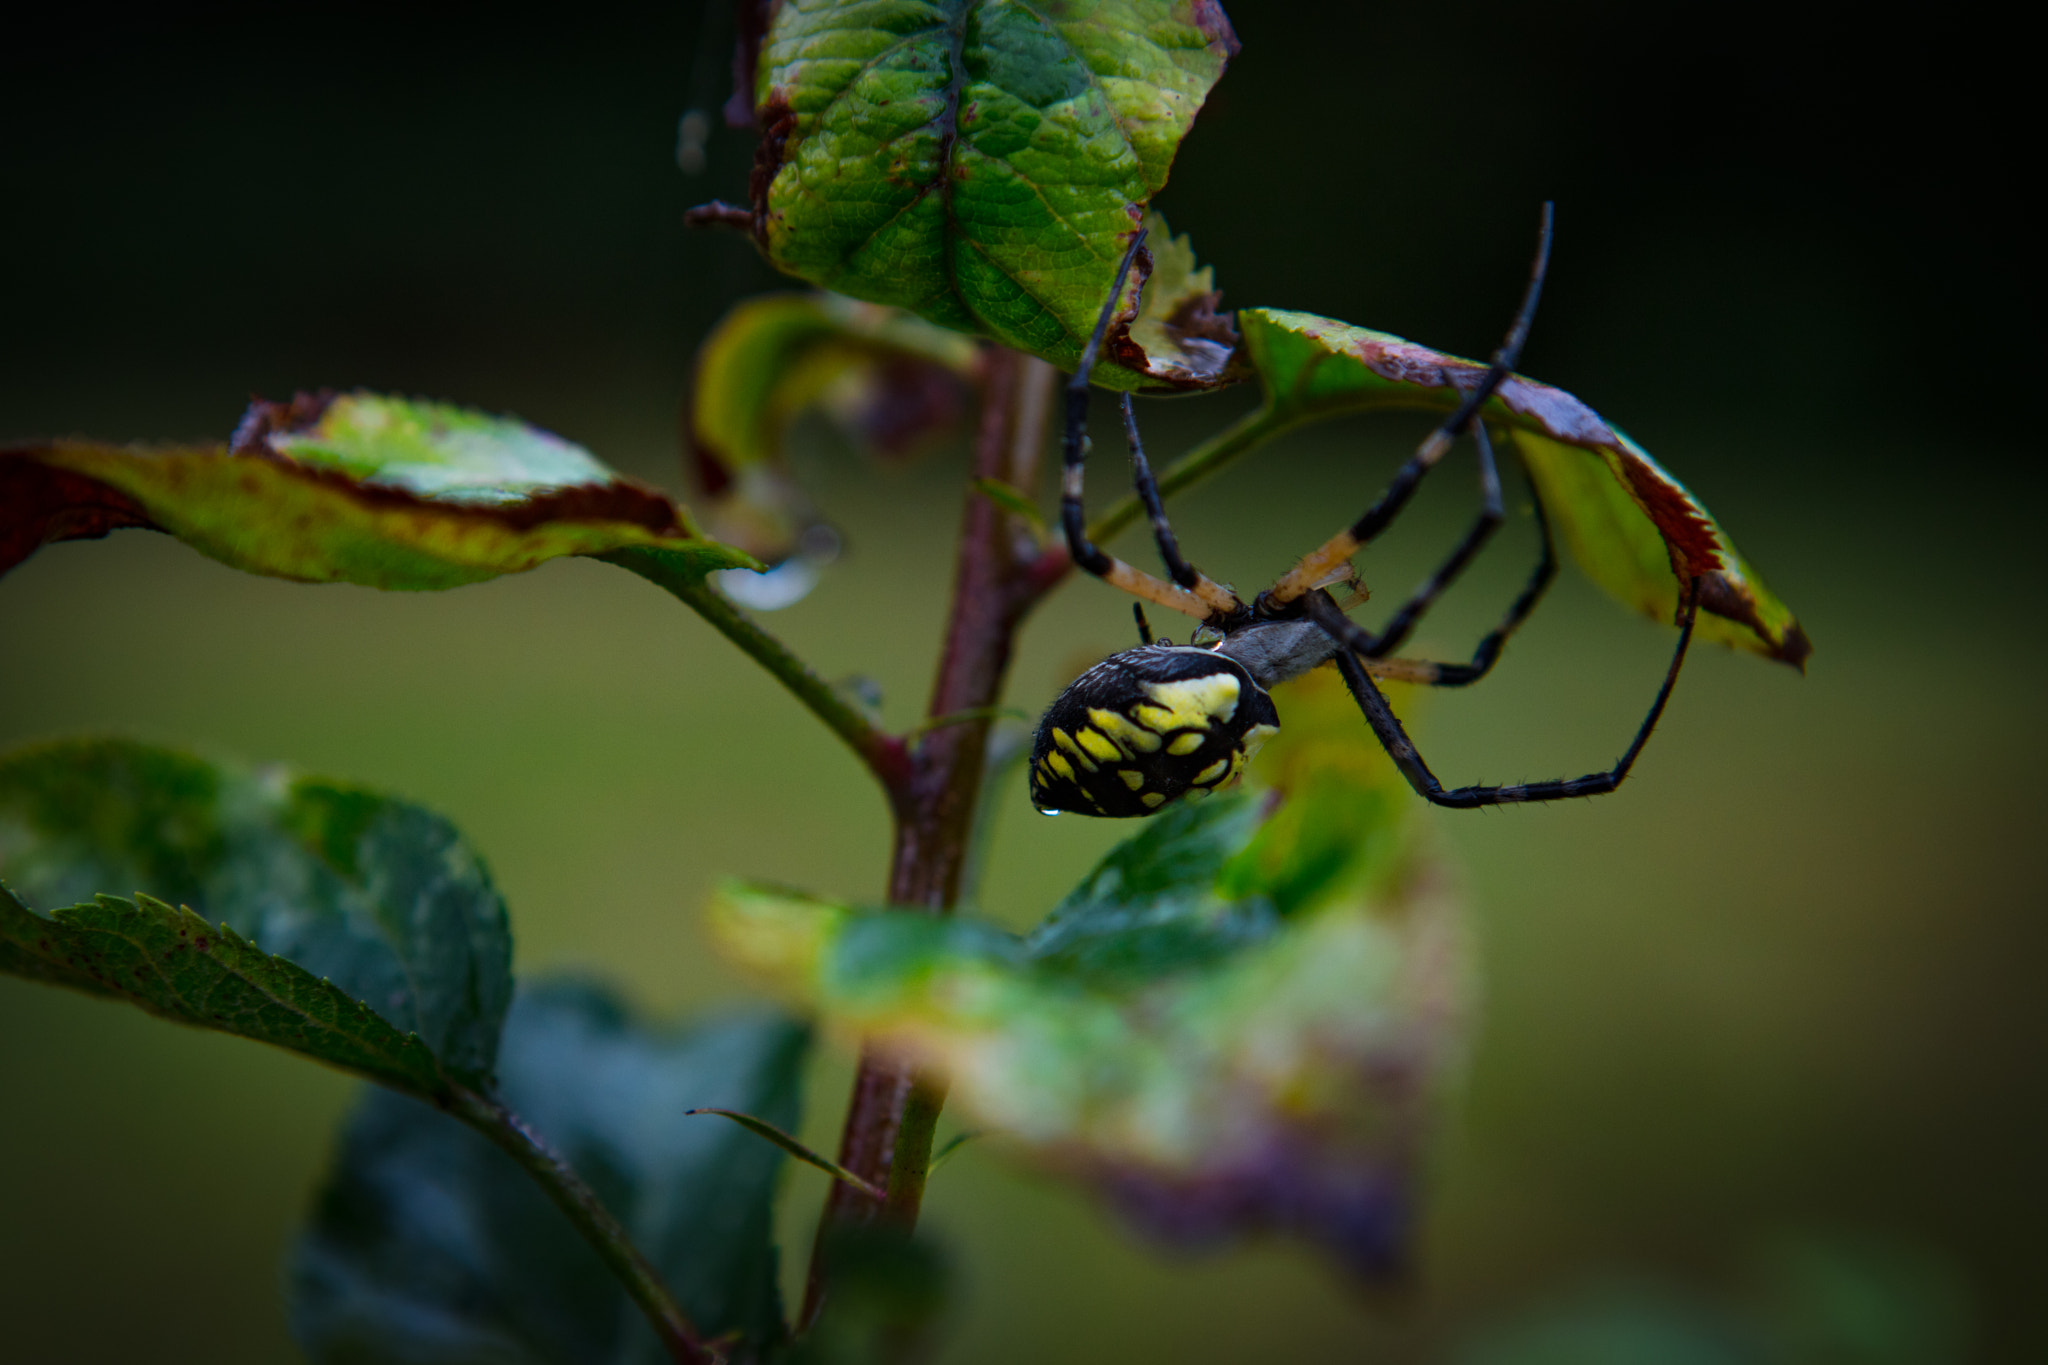 Canon EOS 5DS sample photo. Garden spider photography